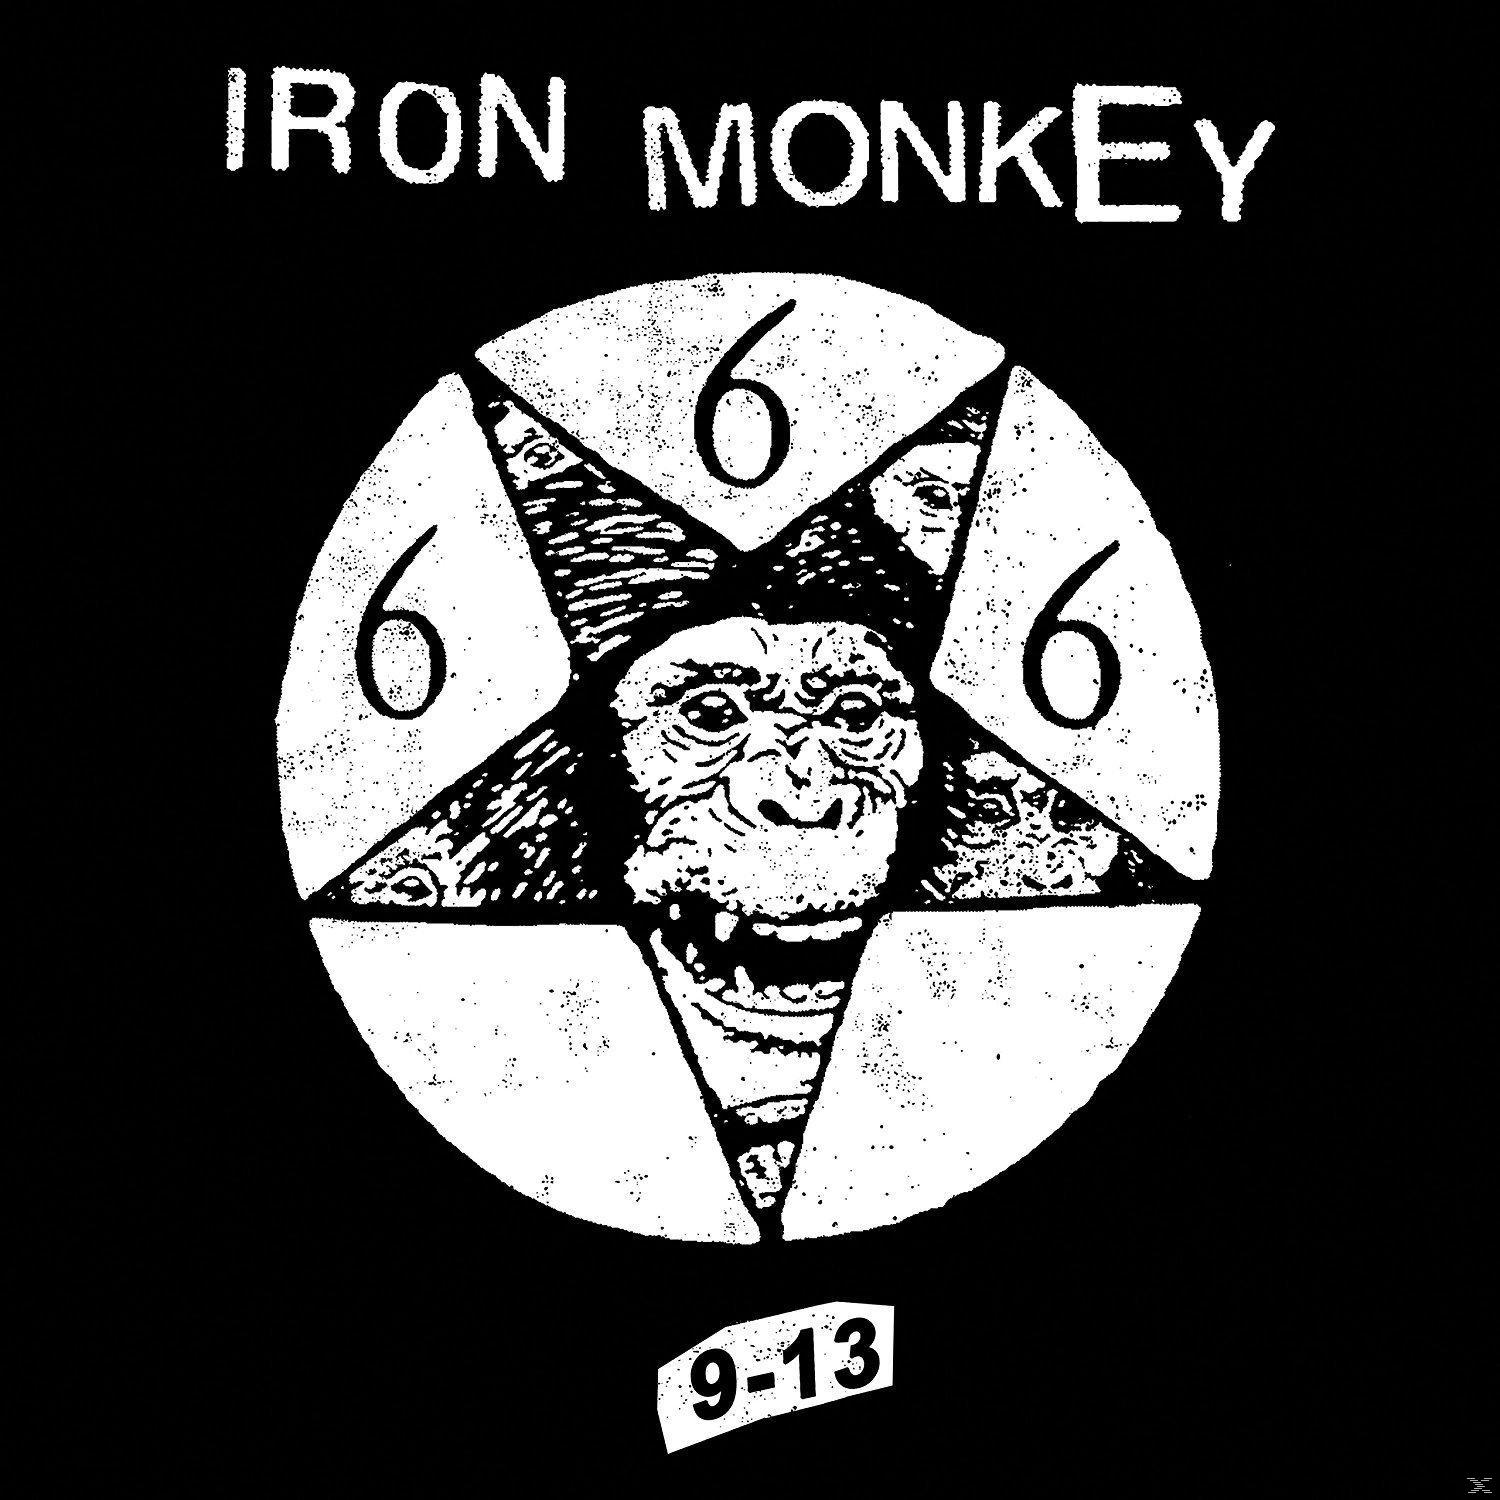 Iron - - LP+MP3) (Vinyl) (Black 9-13 Monkey